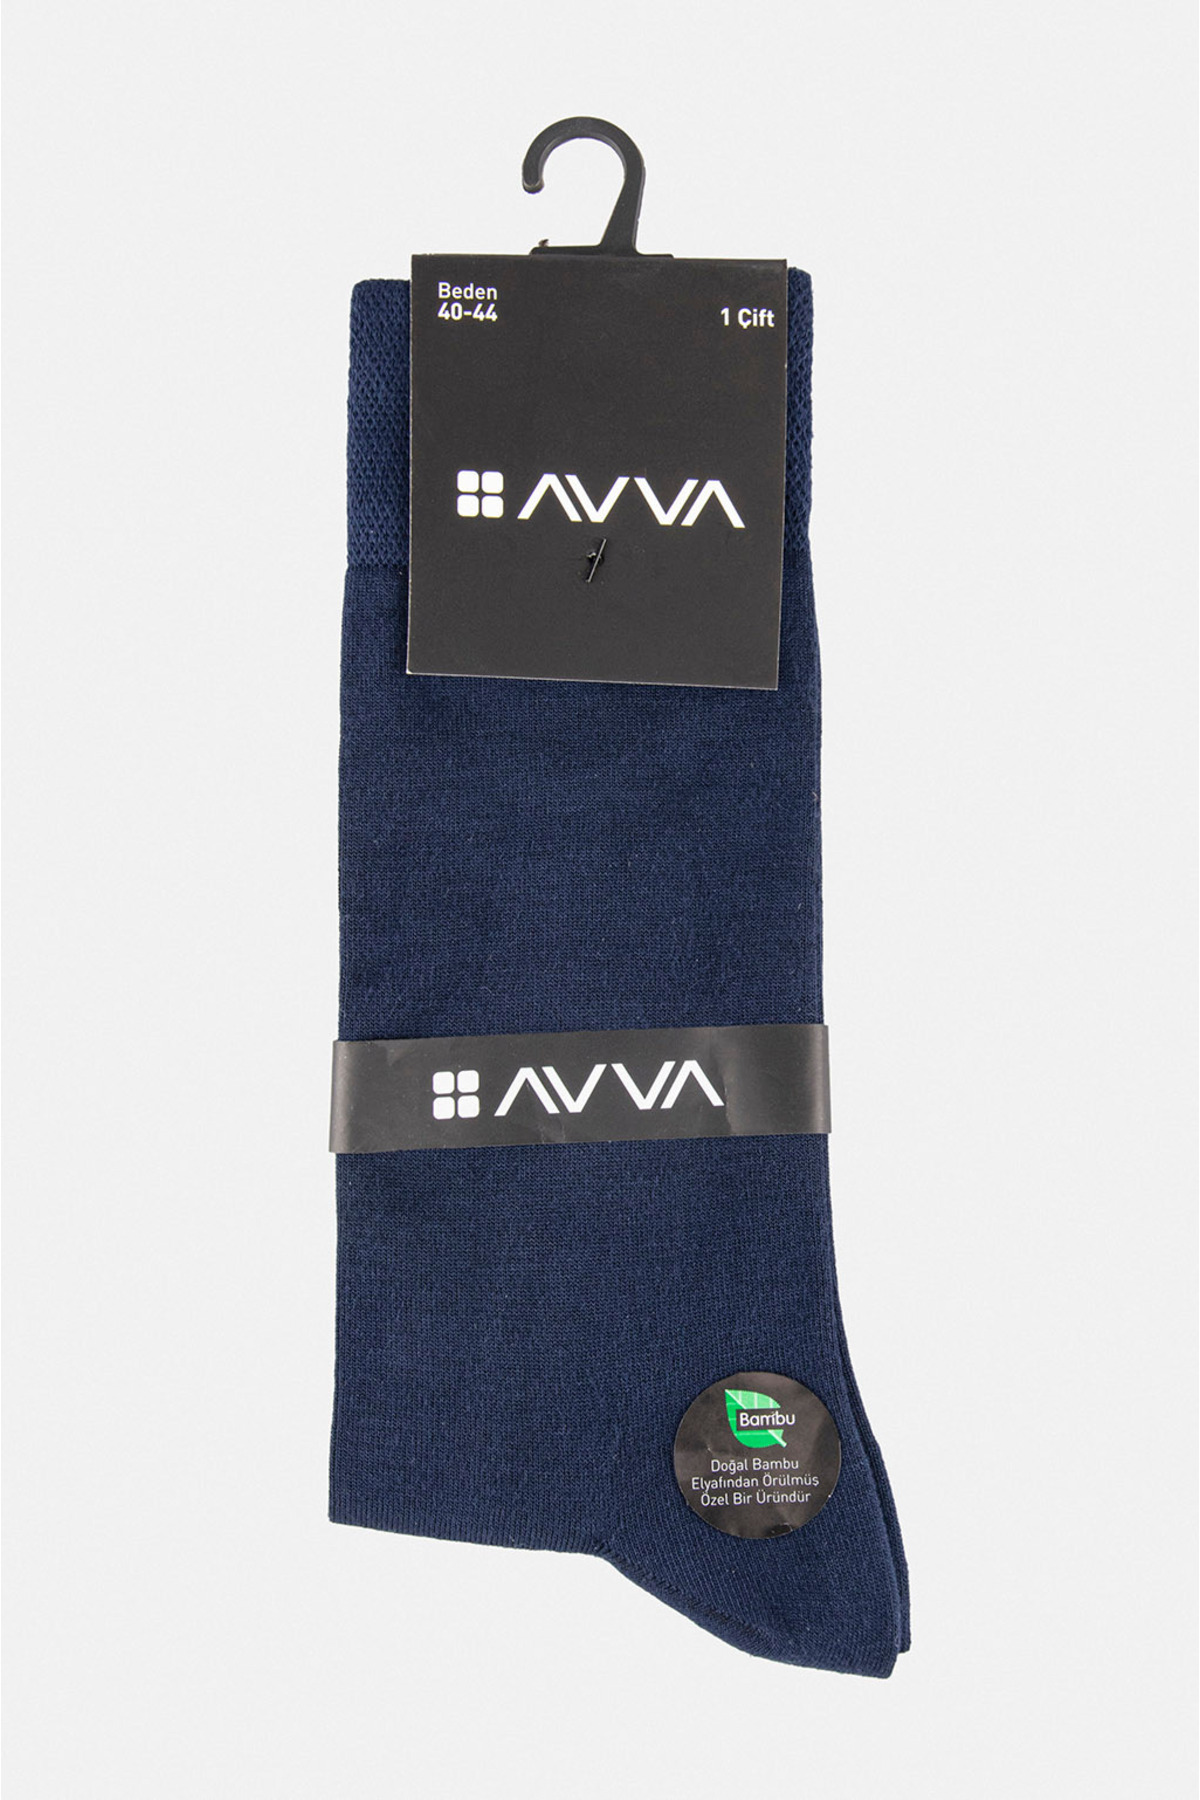 Avva Men's Navy Blue Plain Bamboo Sock Socks